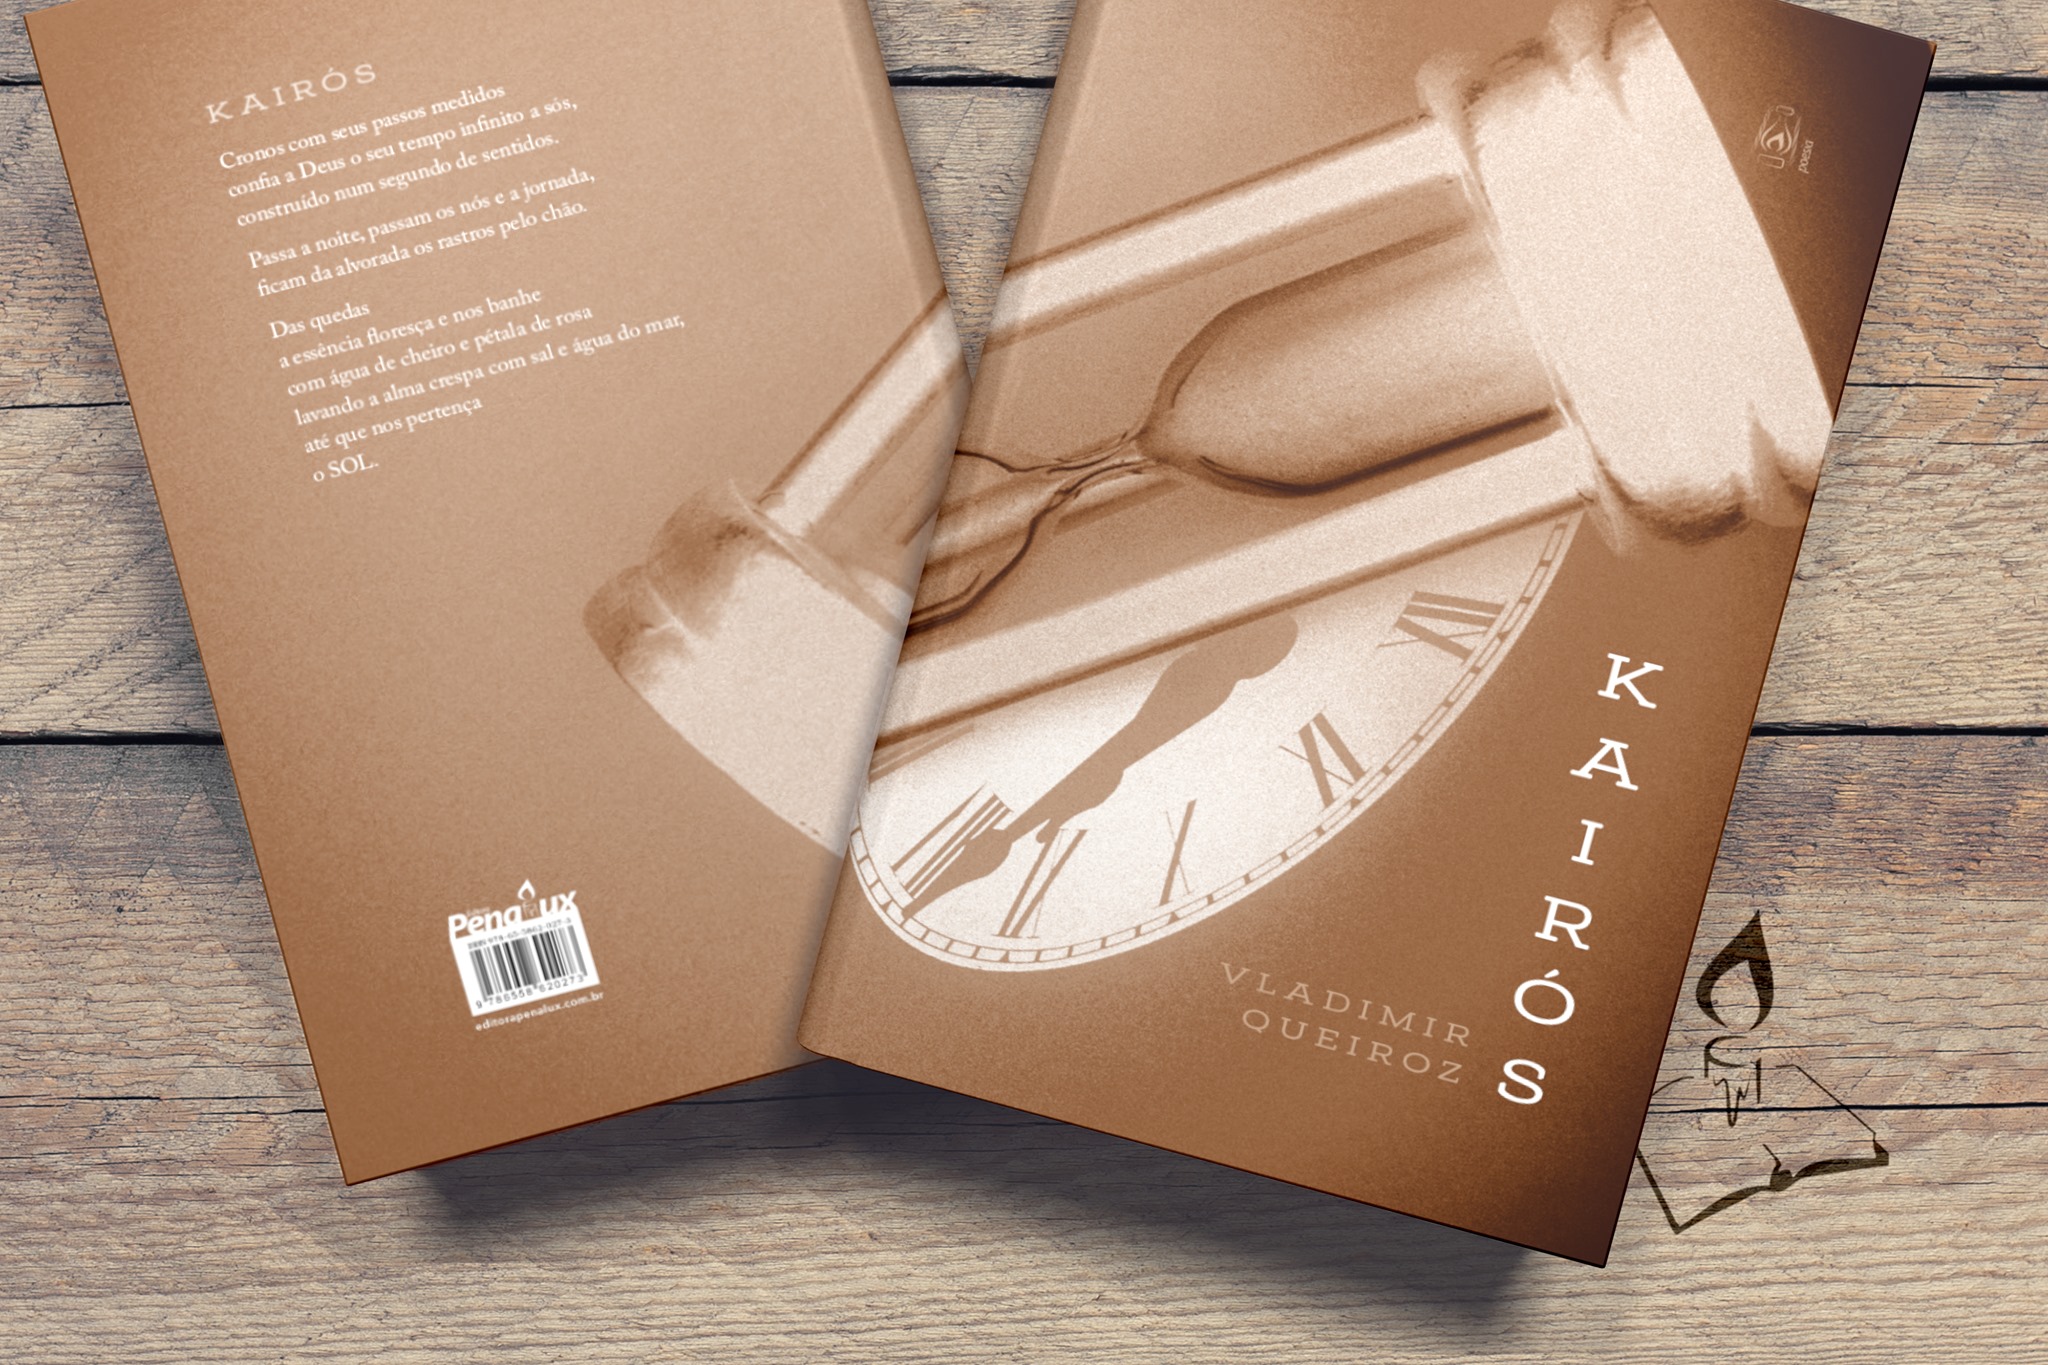 vadlimir queiroz editora penalux - Livro de poemas 'Kairós' trabalha o que a linguagem tem de mais sintético, grãos do fazer poético | por Fernando Andrade